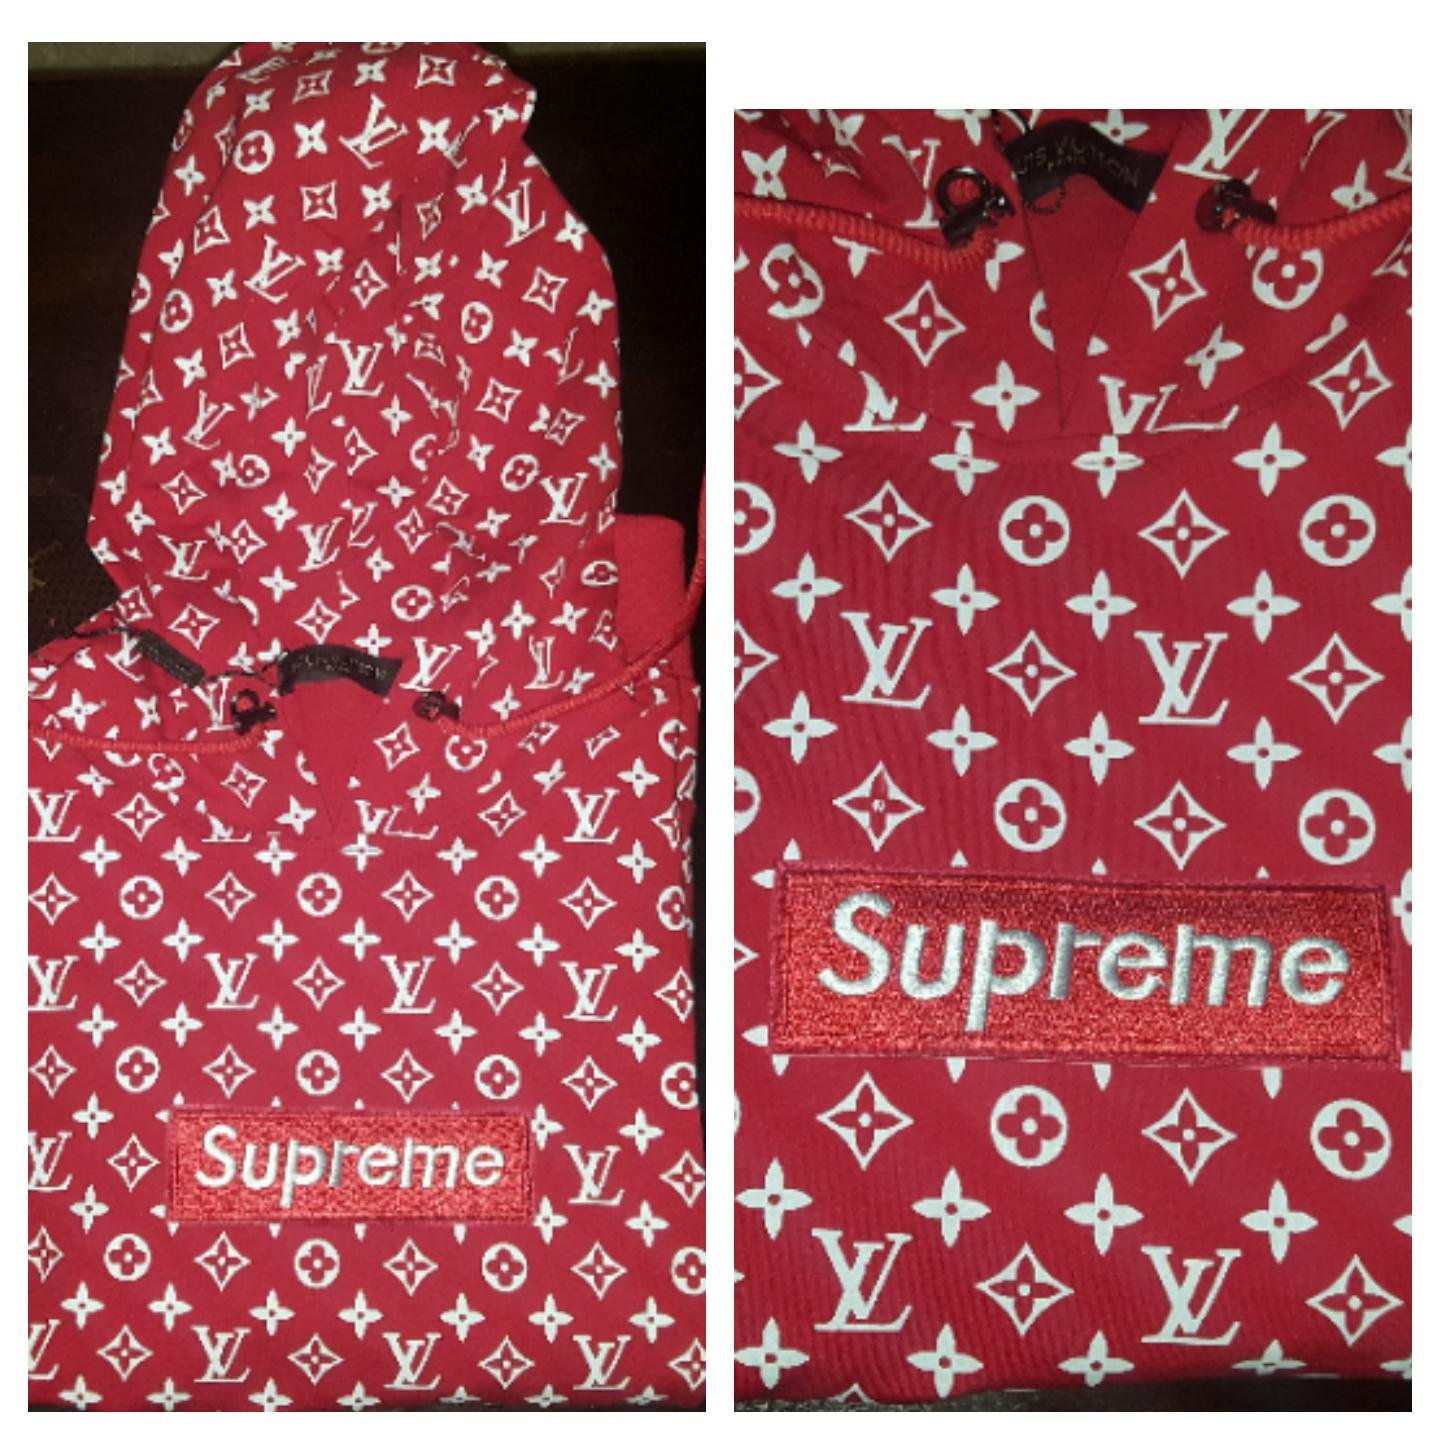 louis x supreme hoodie